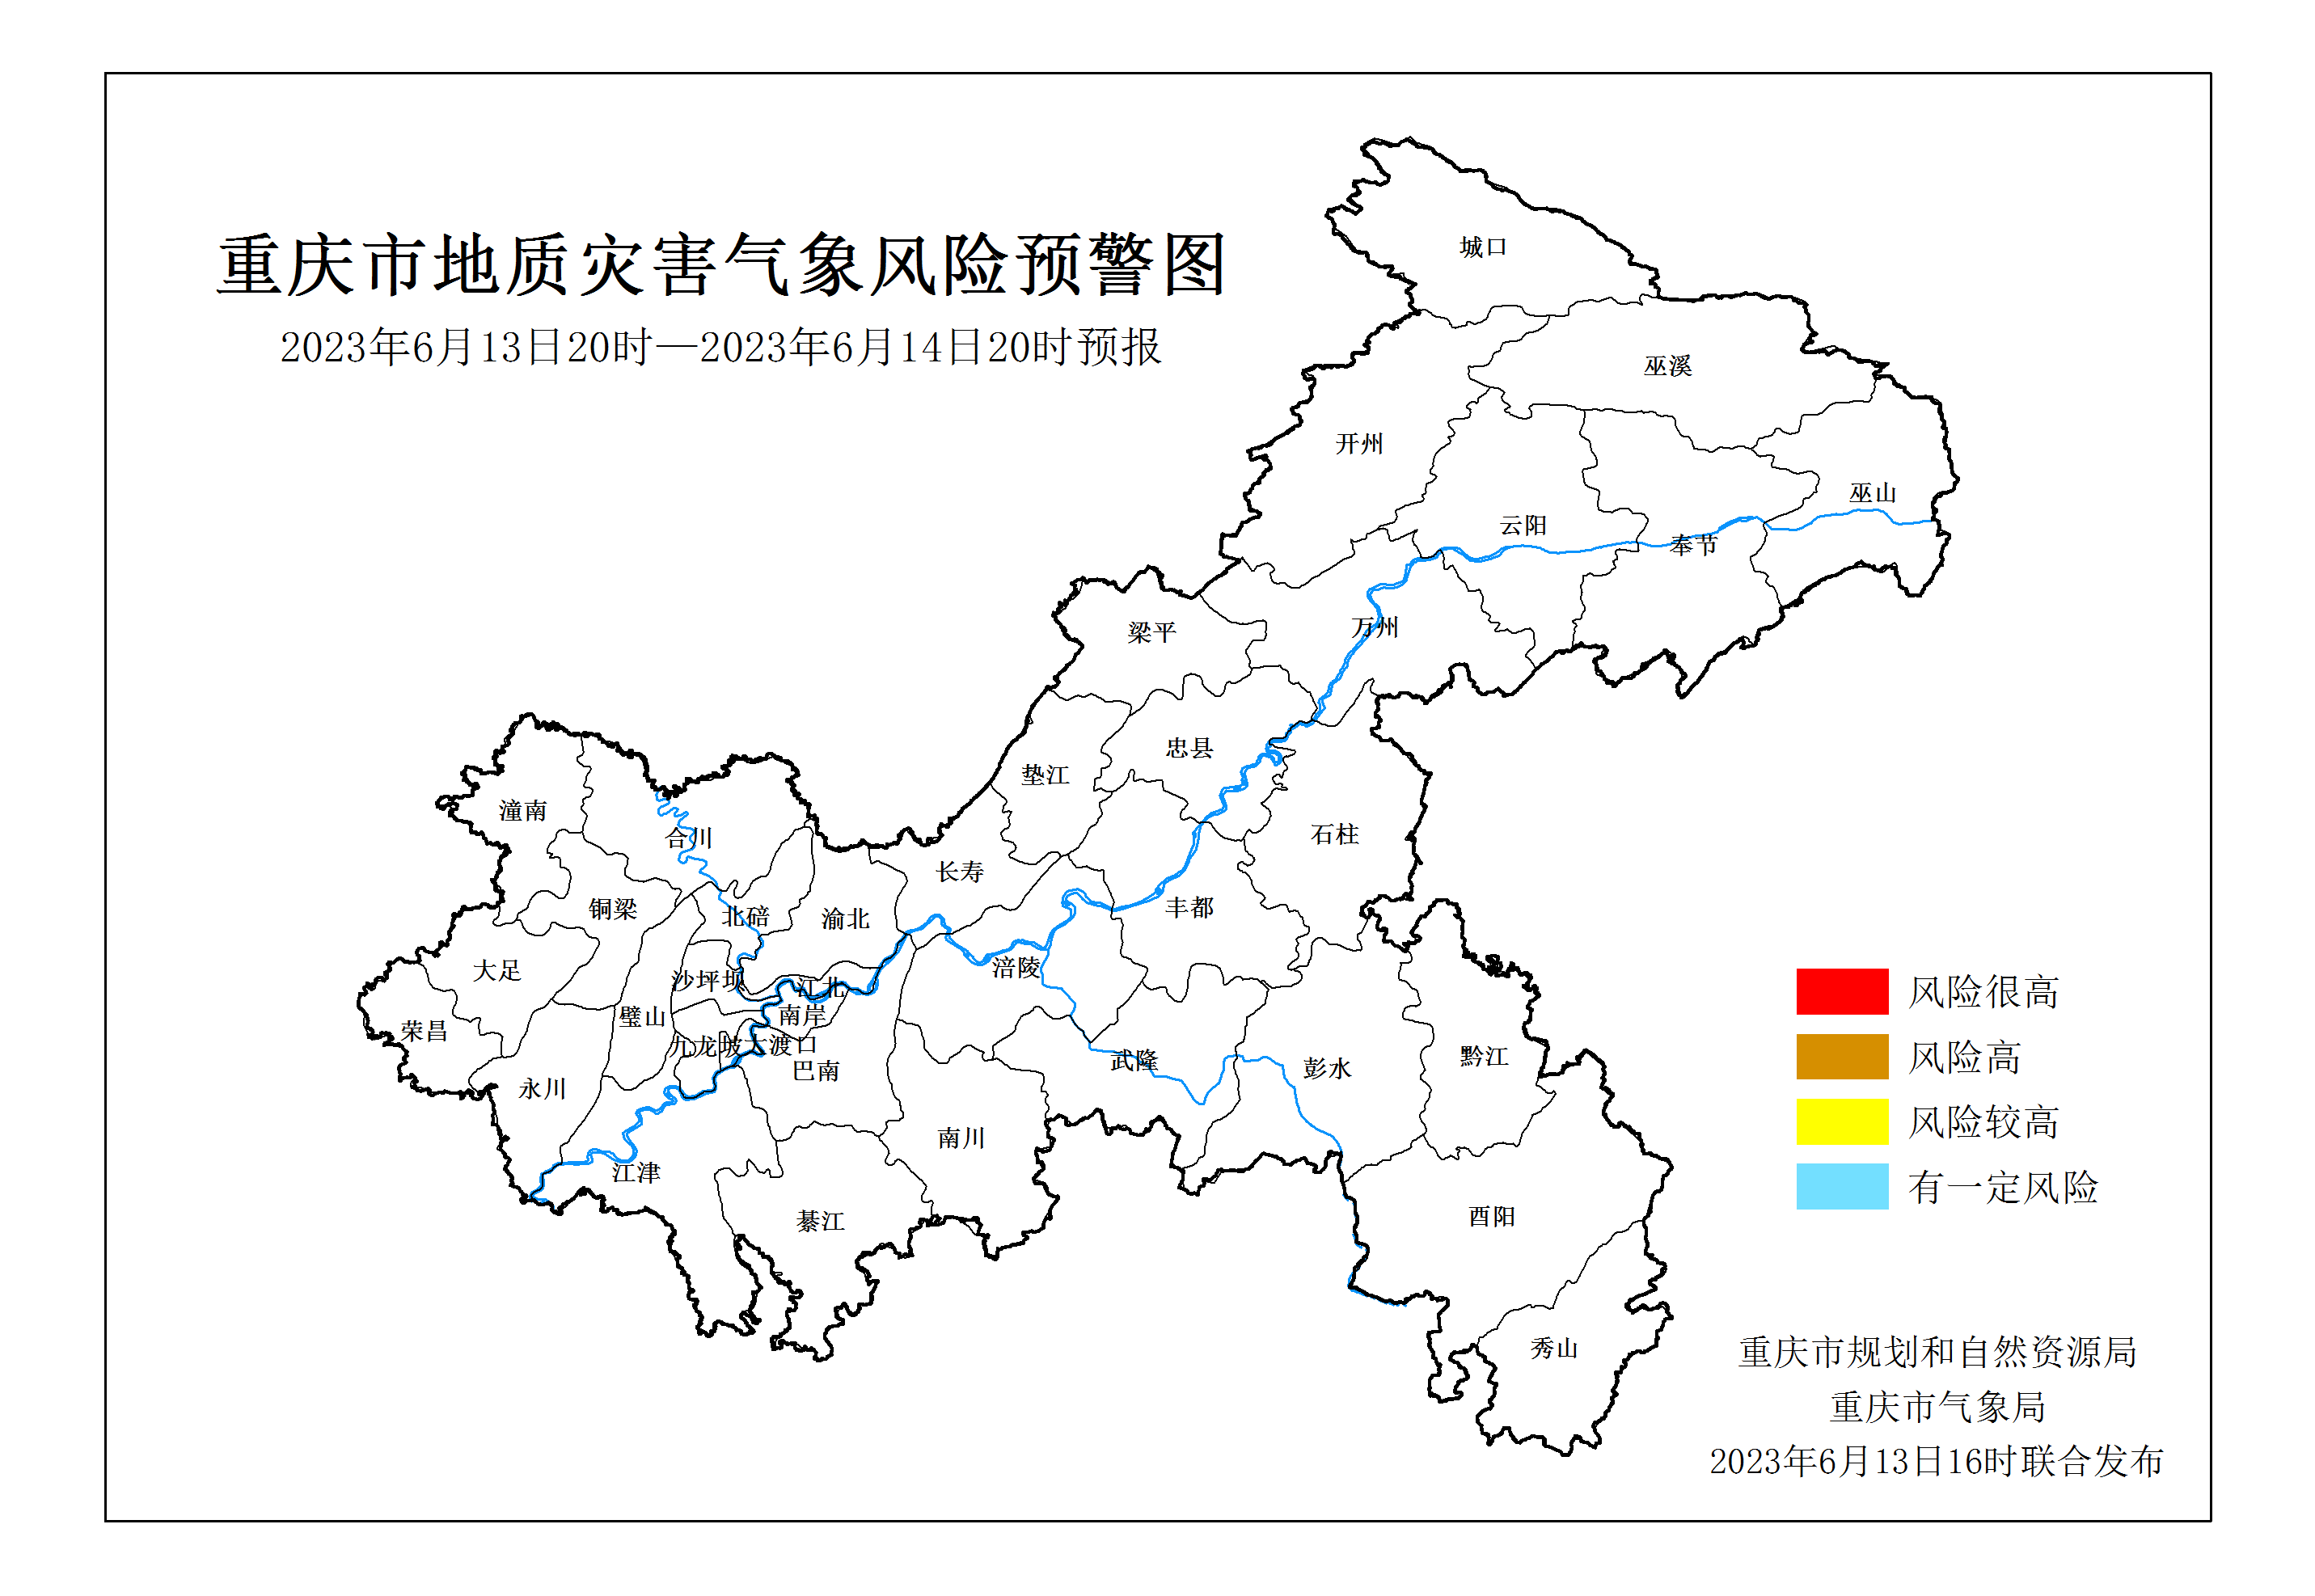 2023年6月13日重庆市地质灾害气象风险预警图24小时预报